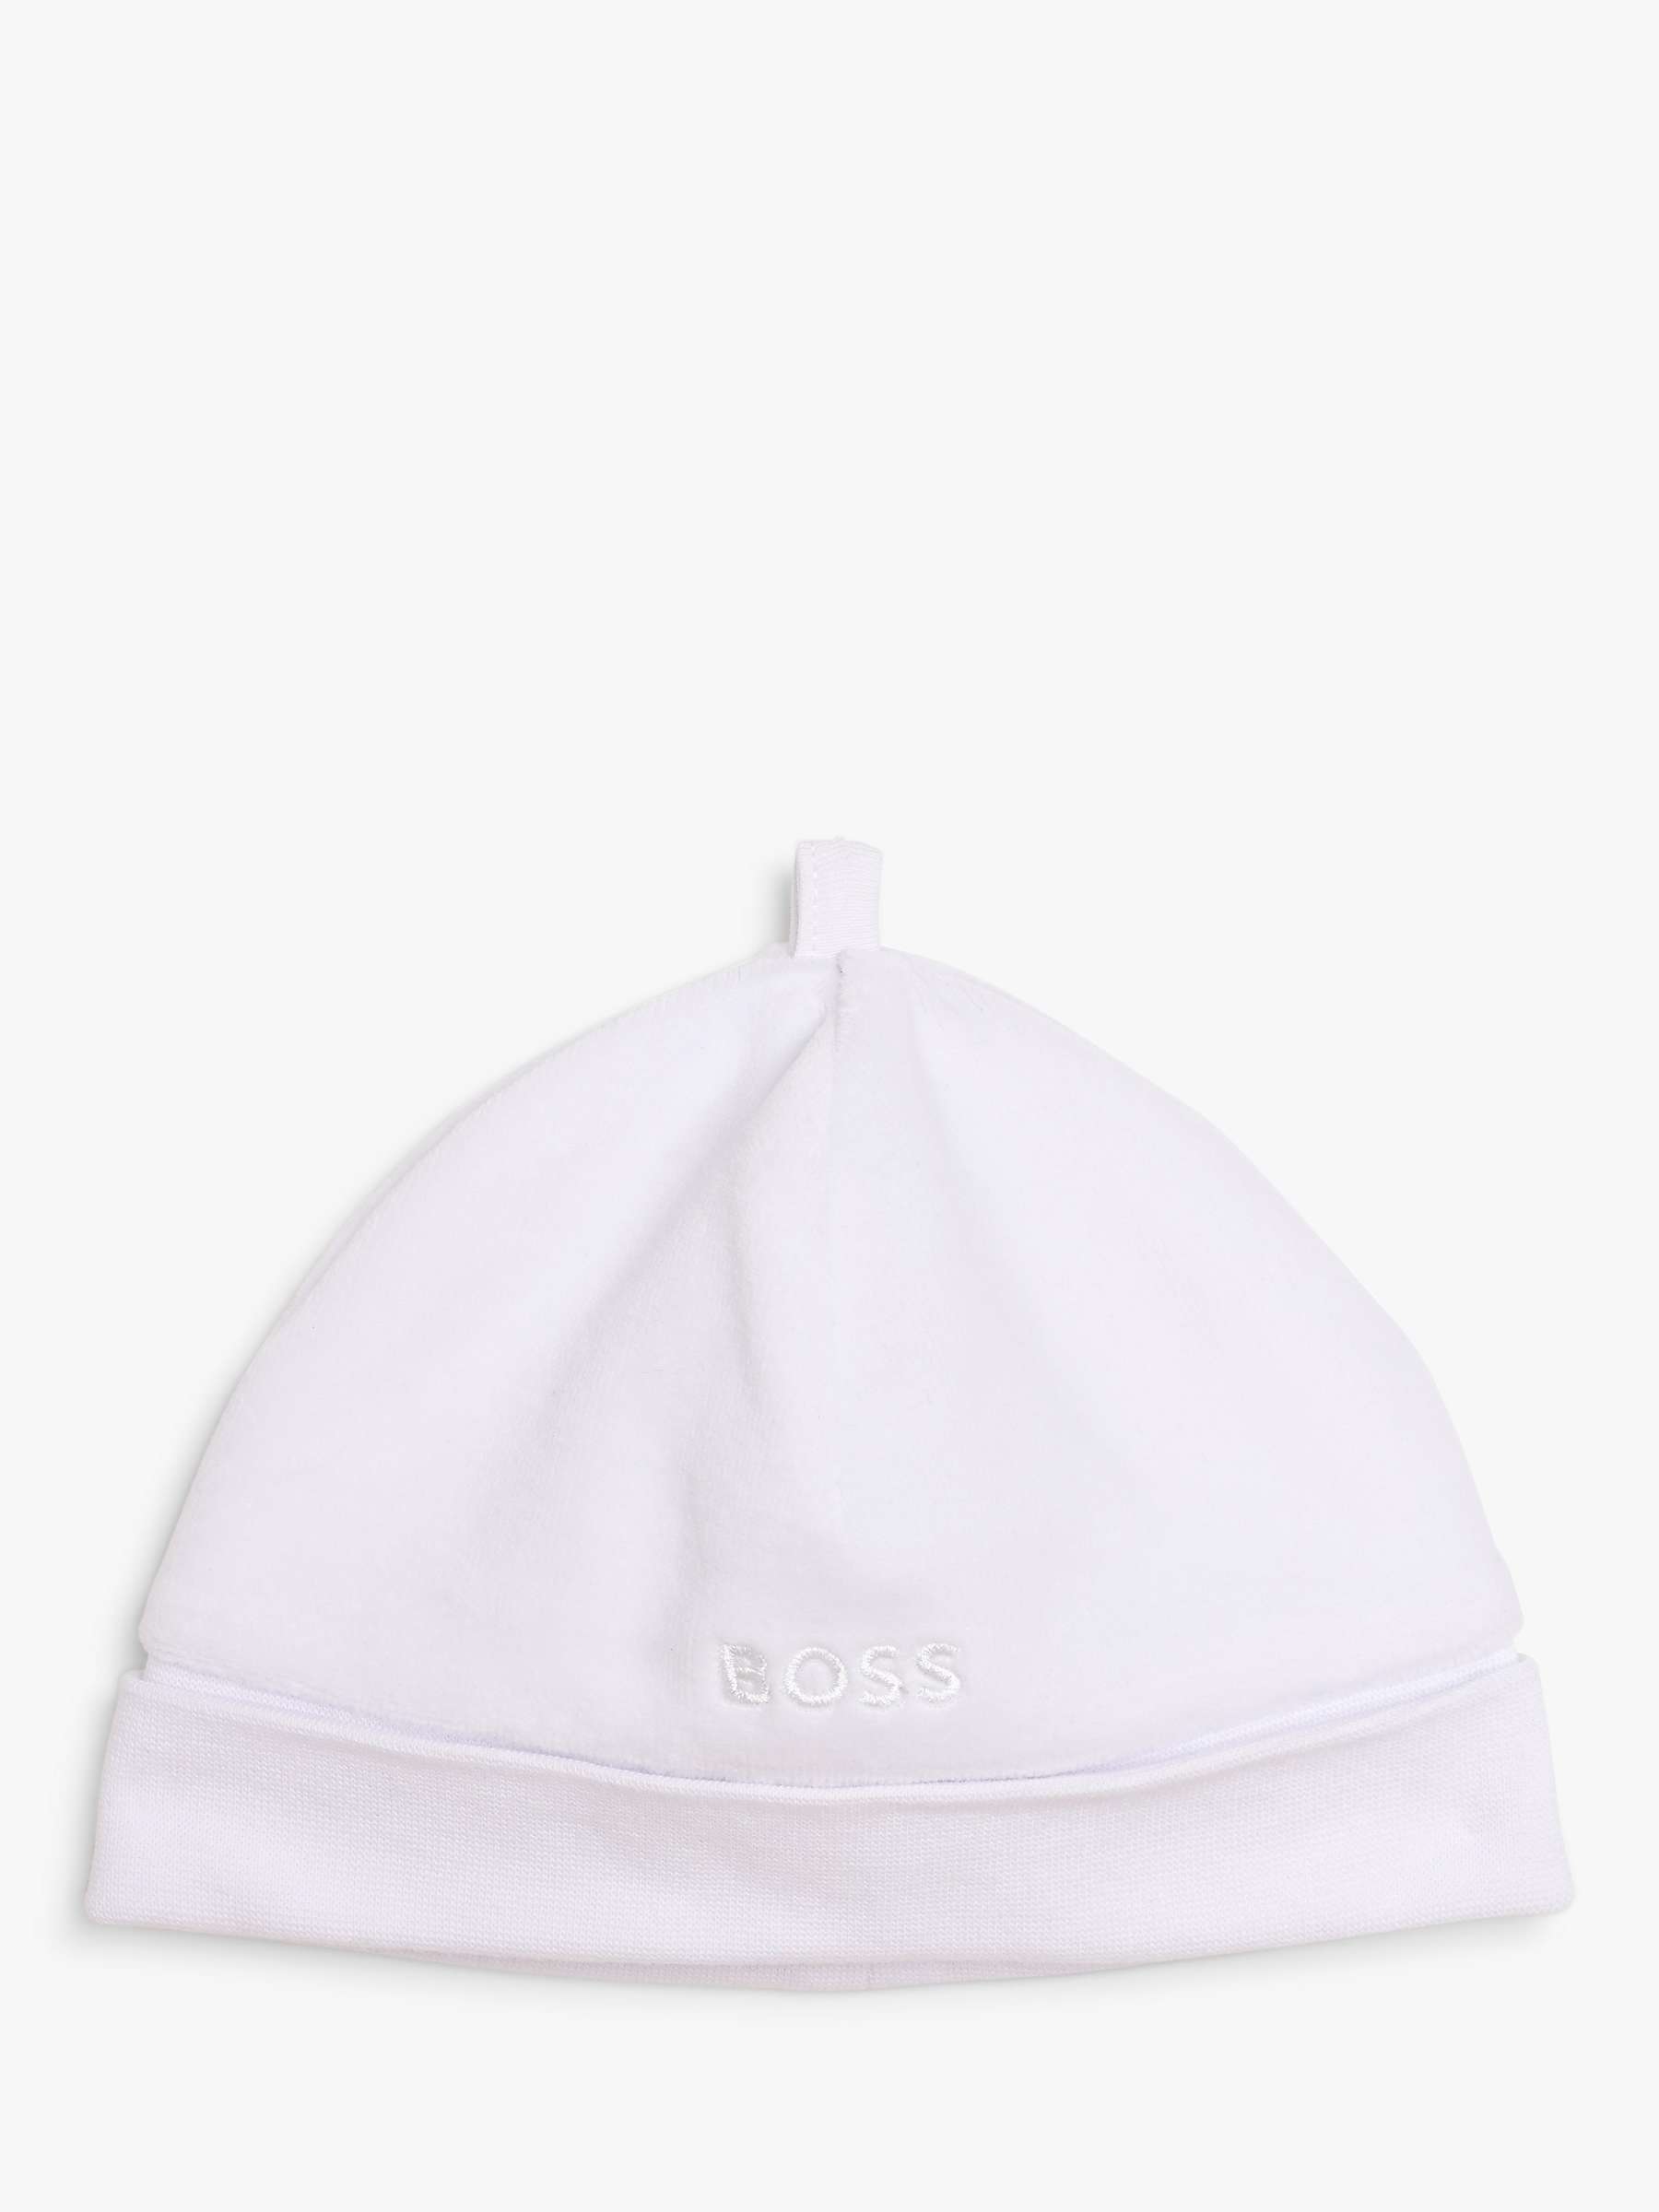 Buy BOSS Baby Pull On Velvet Hat, White Online at johnlewis.com